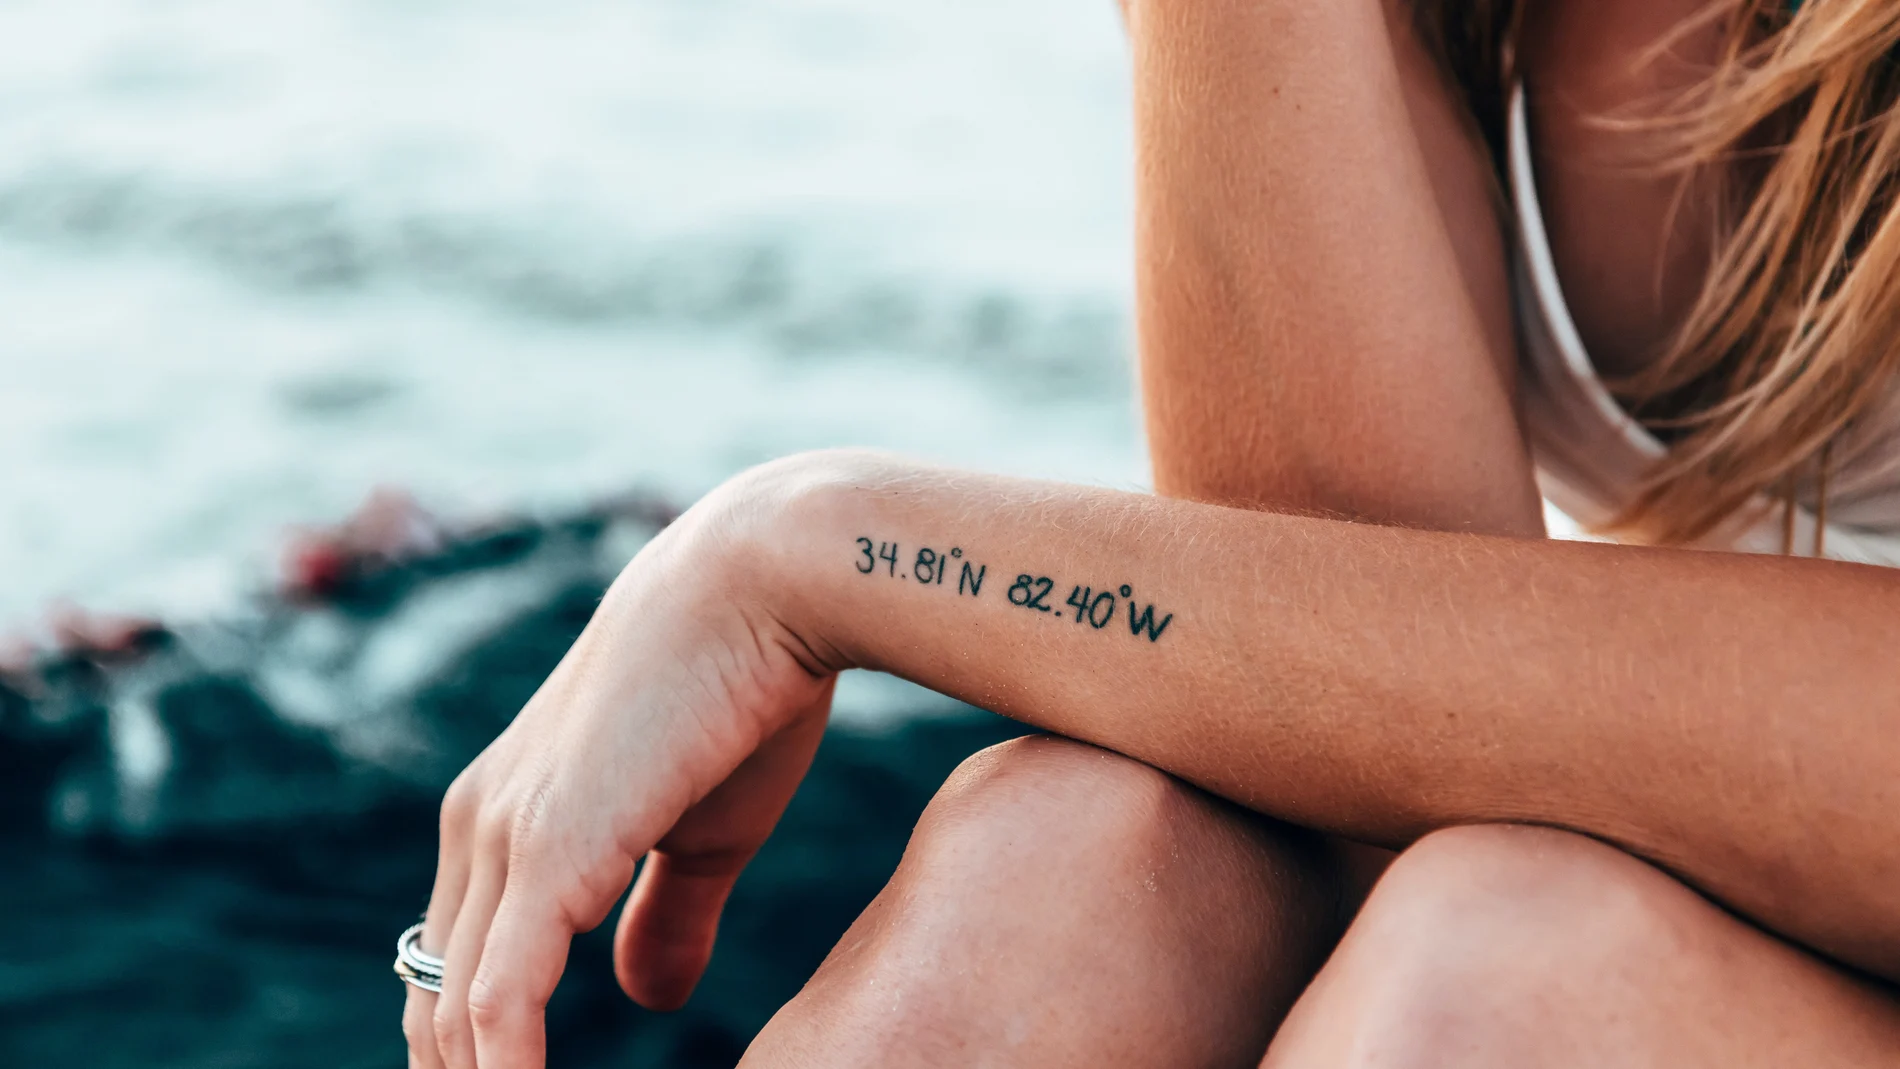 En la imagen, una chica presume de sus tatuajes frente al mar.